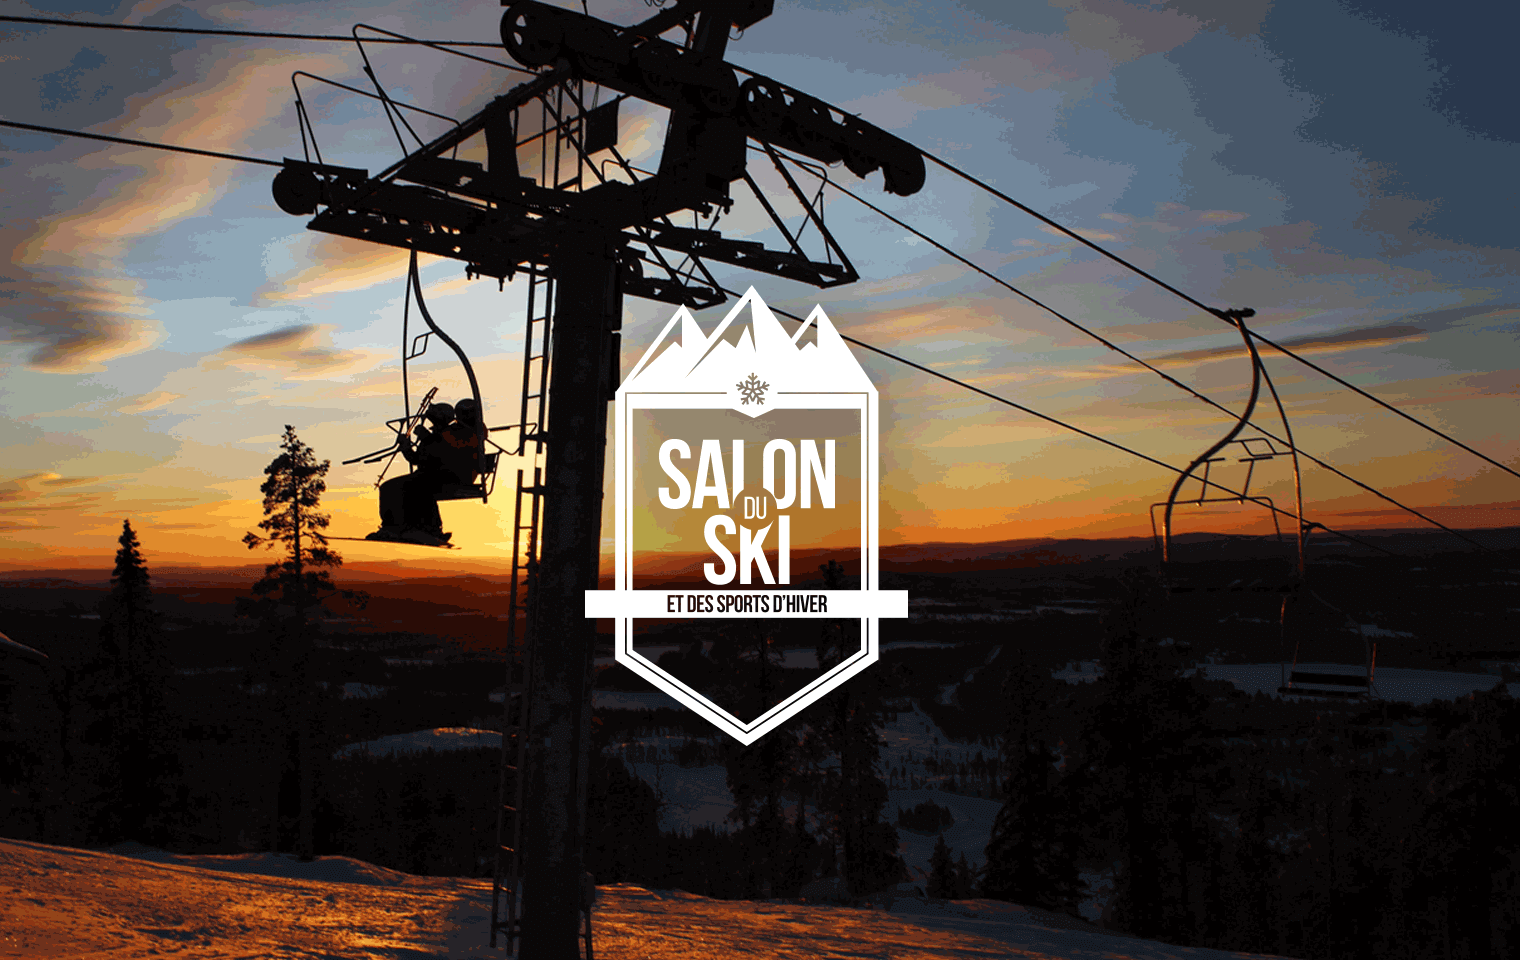 Salon du ski et des sports d'hiver